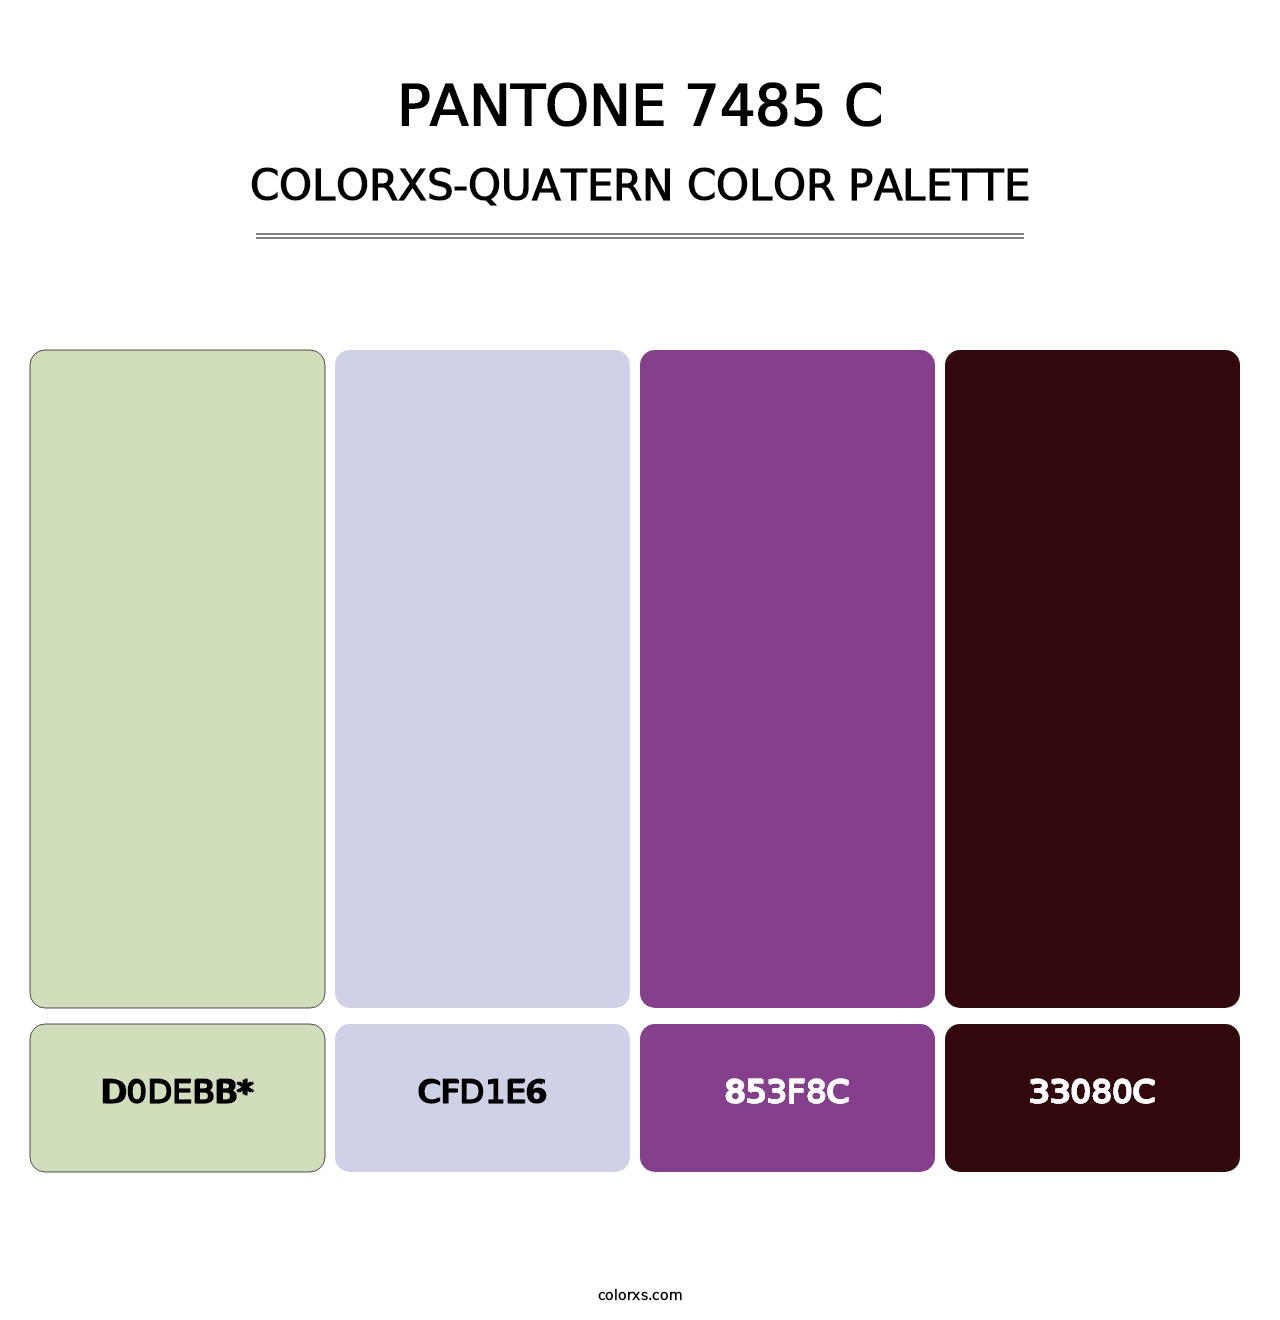 PANTONE 7485 C - Colorxs Quatern Palette